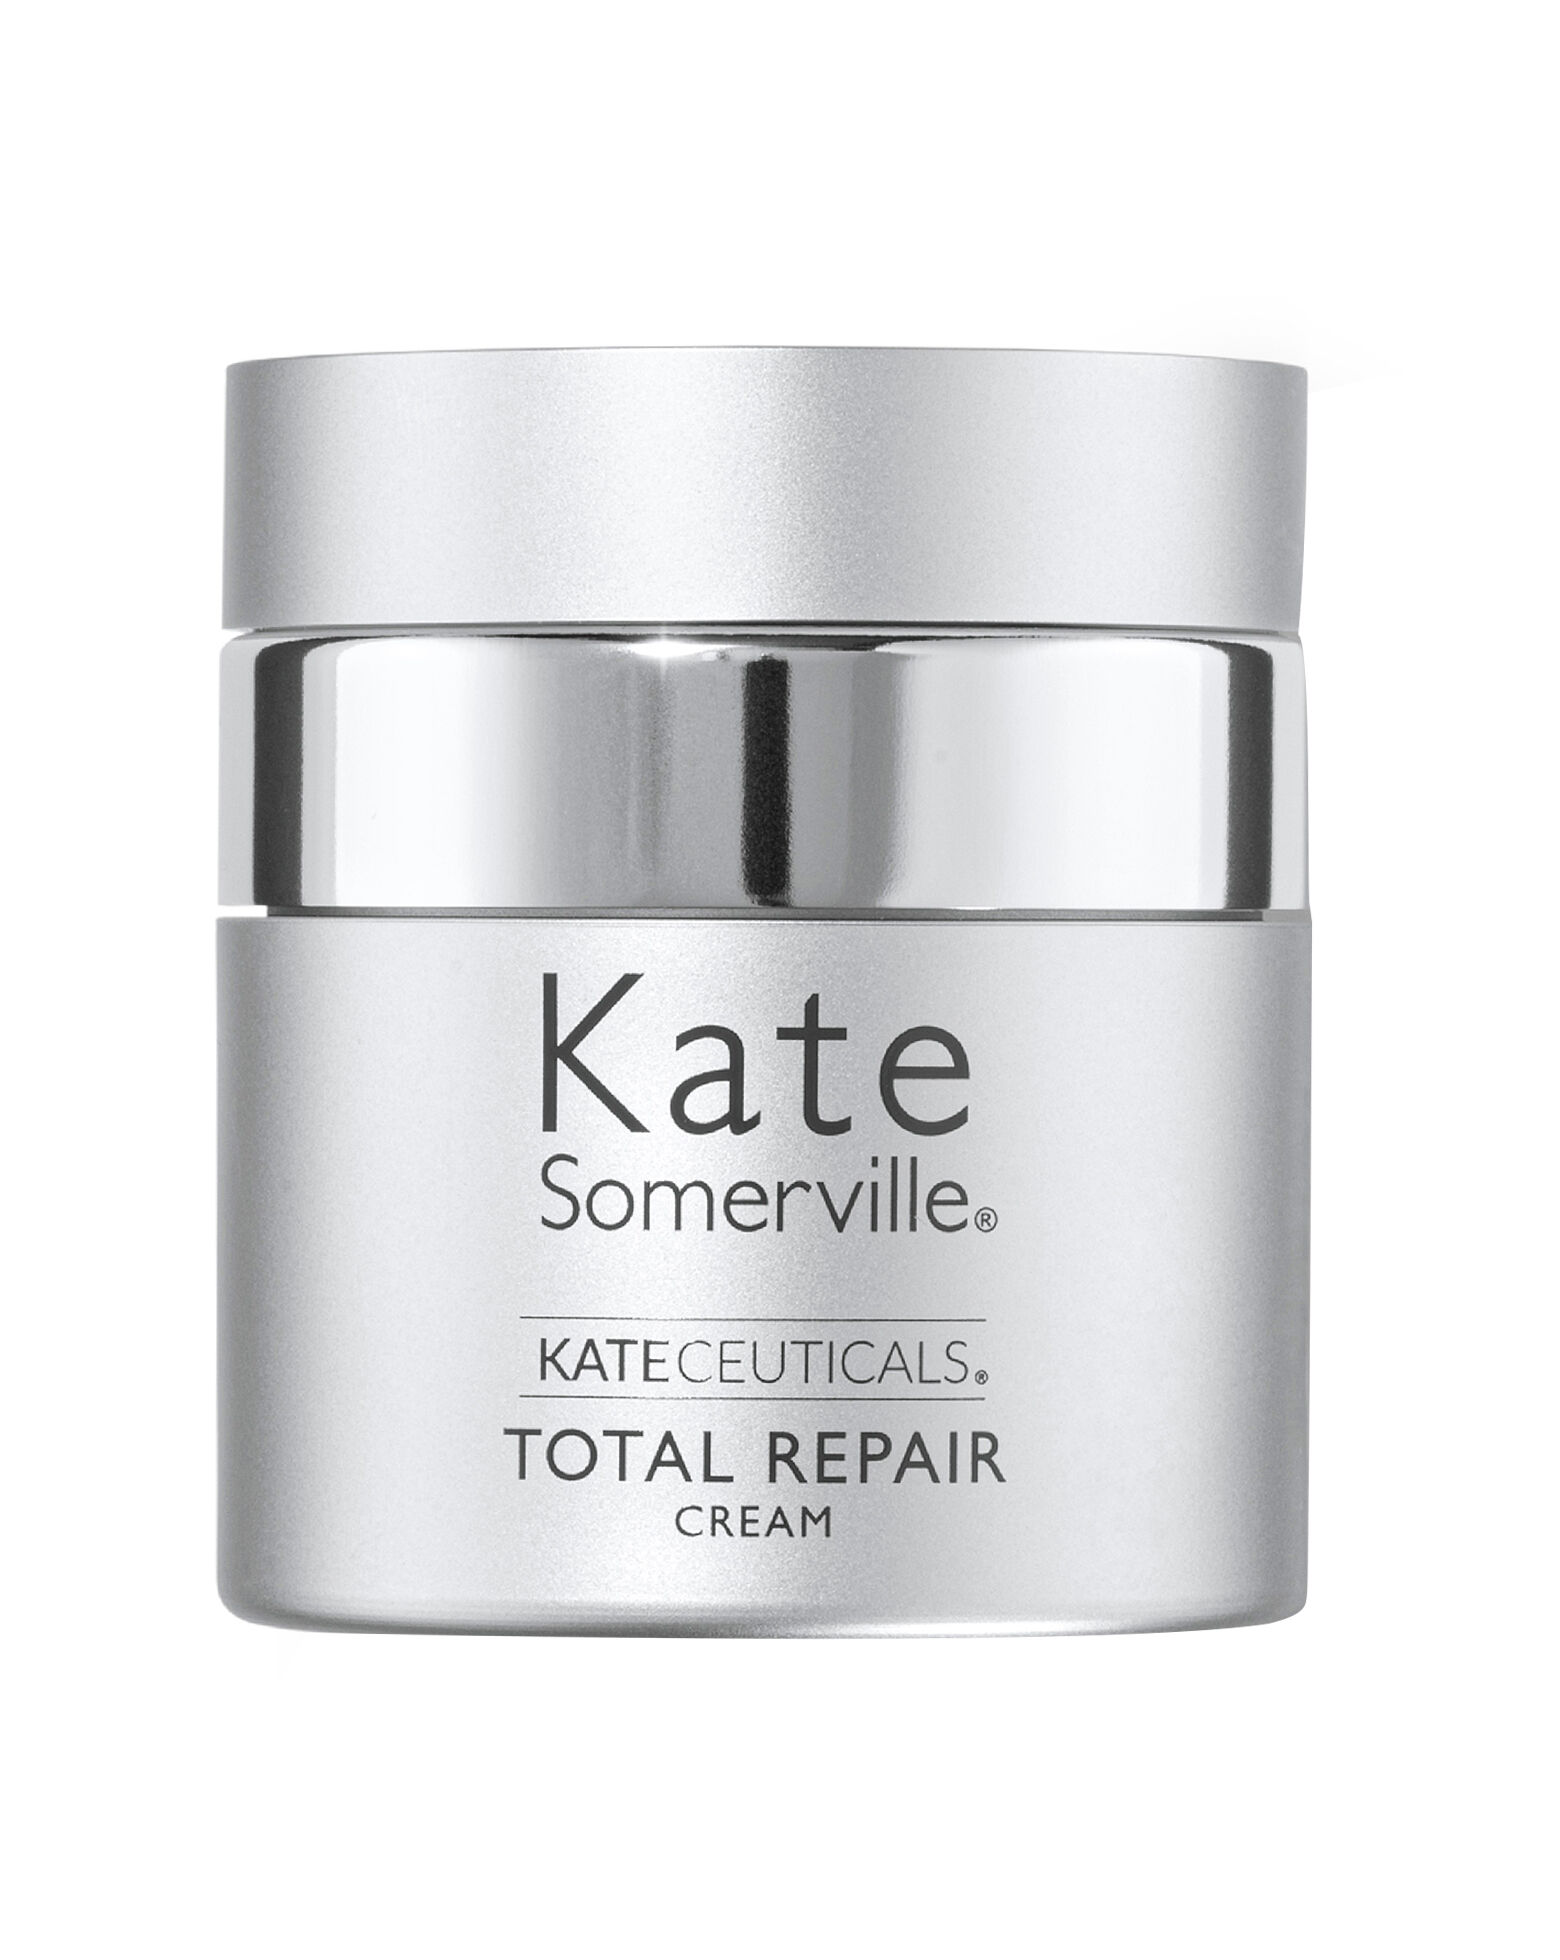 Kate Somerville - Kateceuticals Total Repair Cream